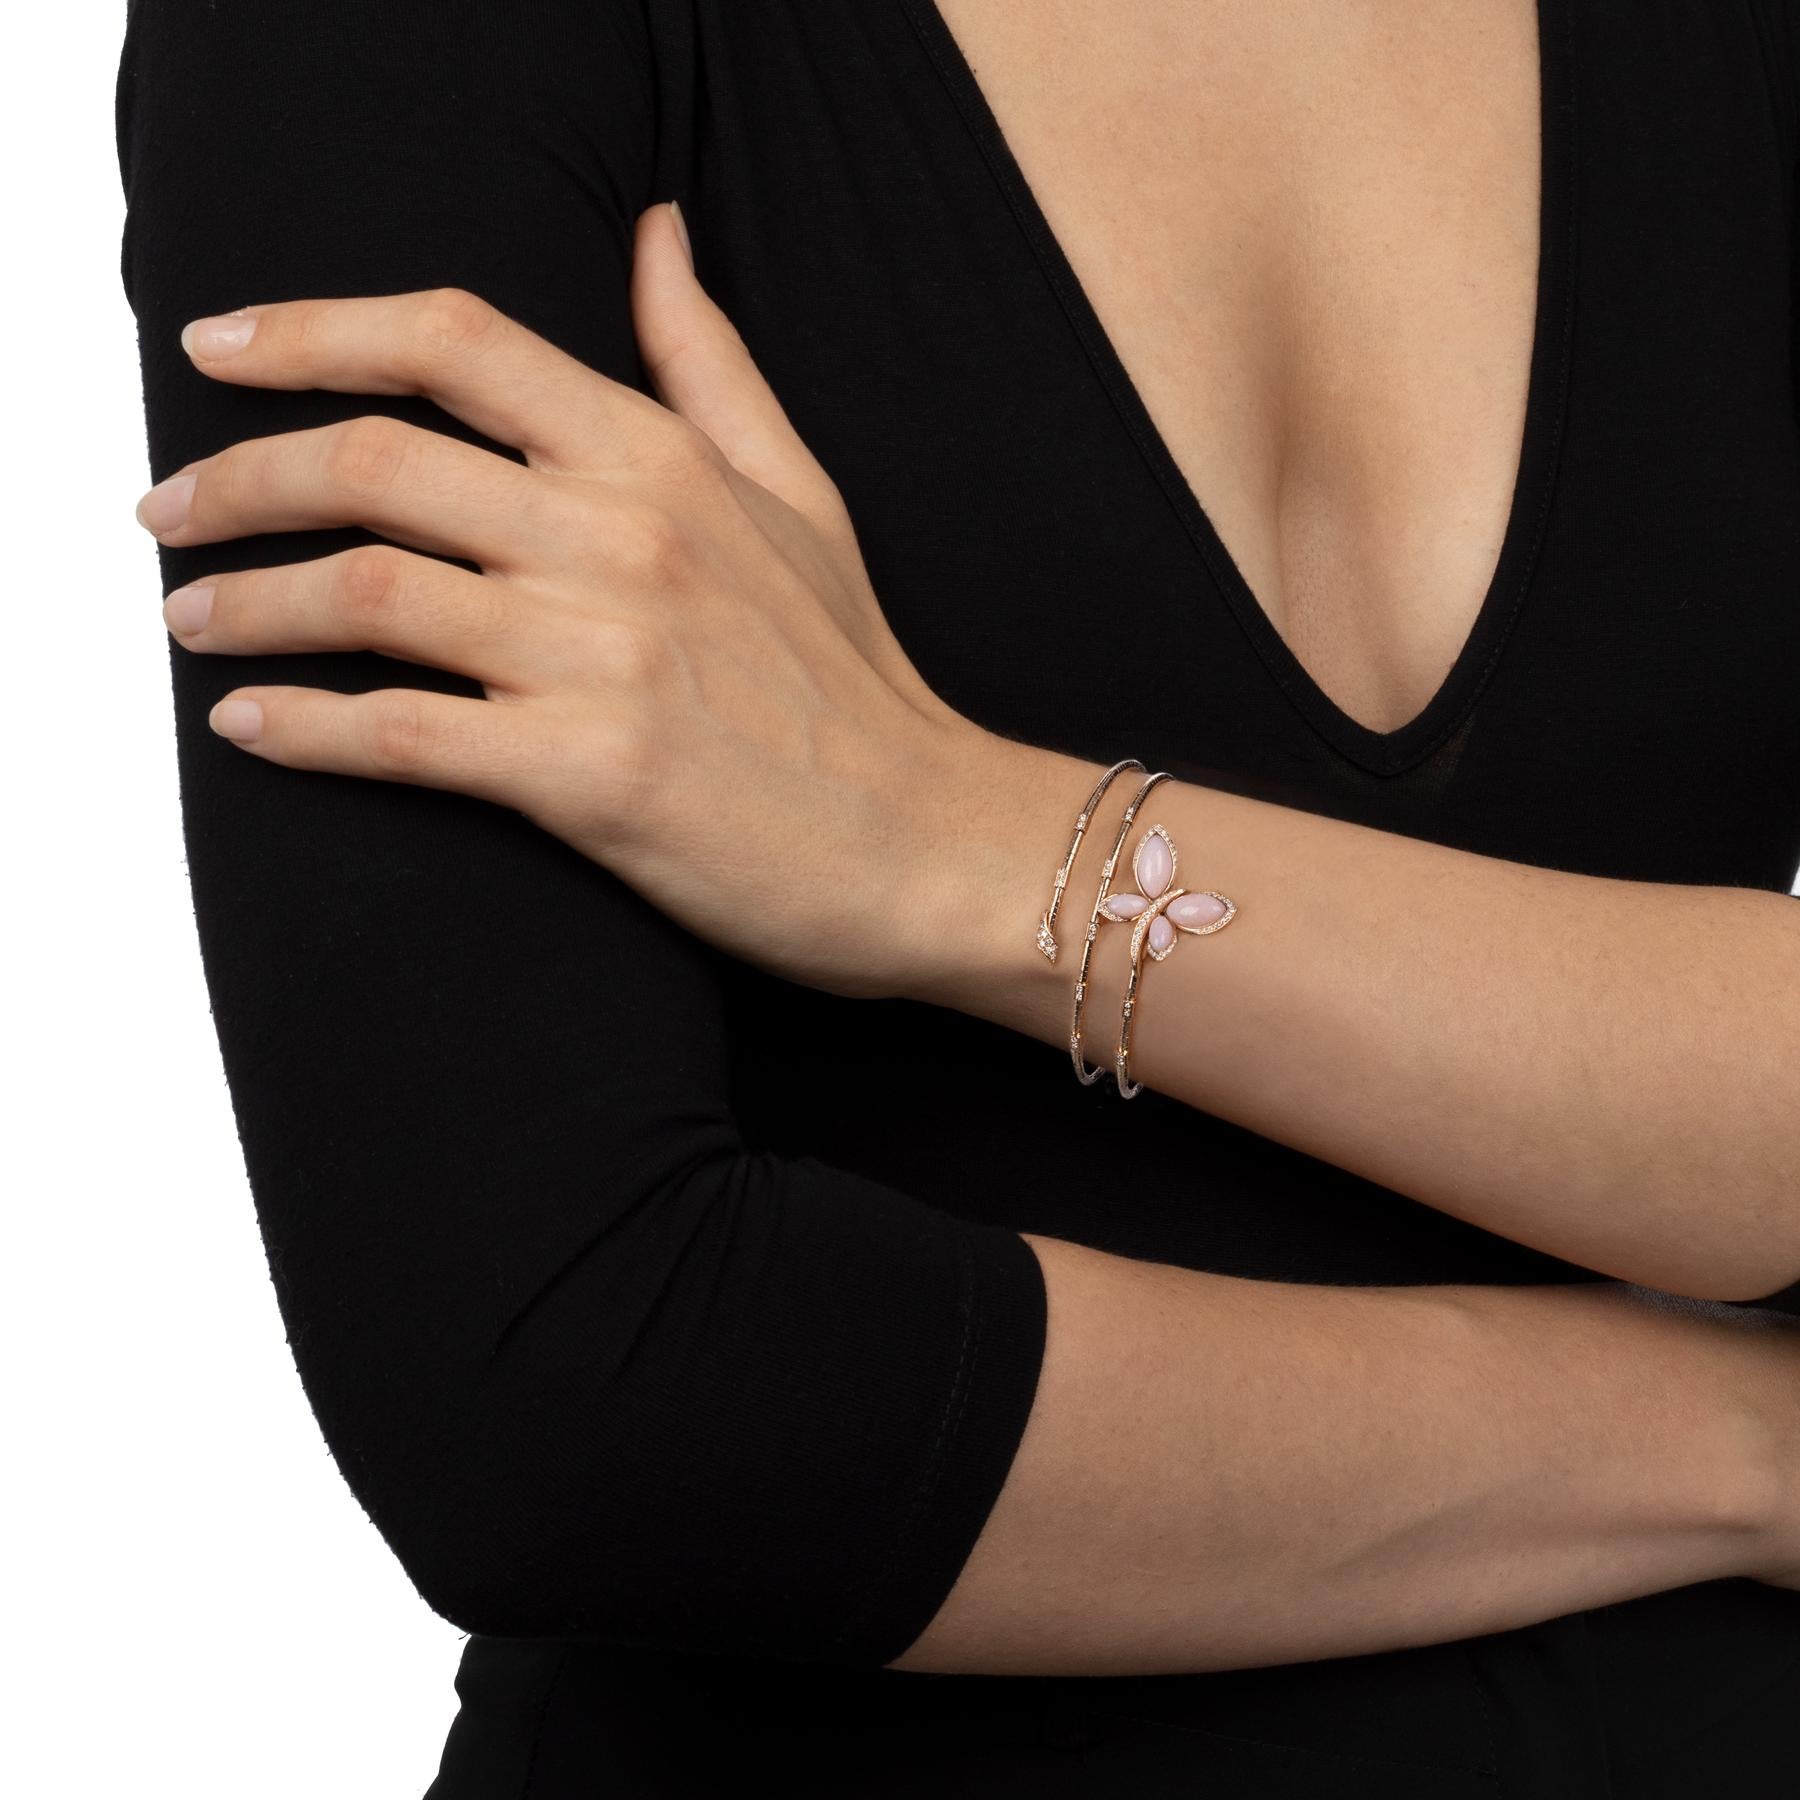 Die Schönheit dieses flexiblen, spiralförmigen Armbands mit Titankern wickelt sich elegant um das Handgelenk, während die funkelnden Diamanten und der rosafarbene Opal-Schmetterling für einen Hauch von Glamour sorgen. Eine starke Stilaussage und ein